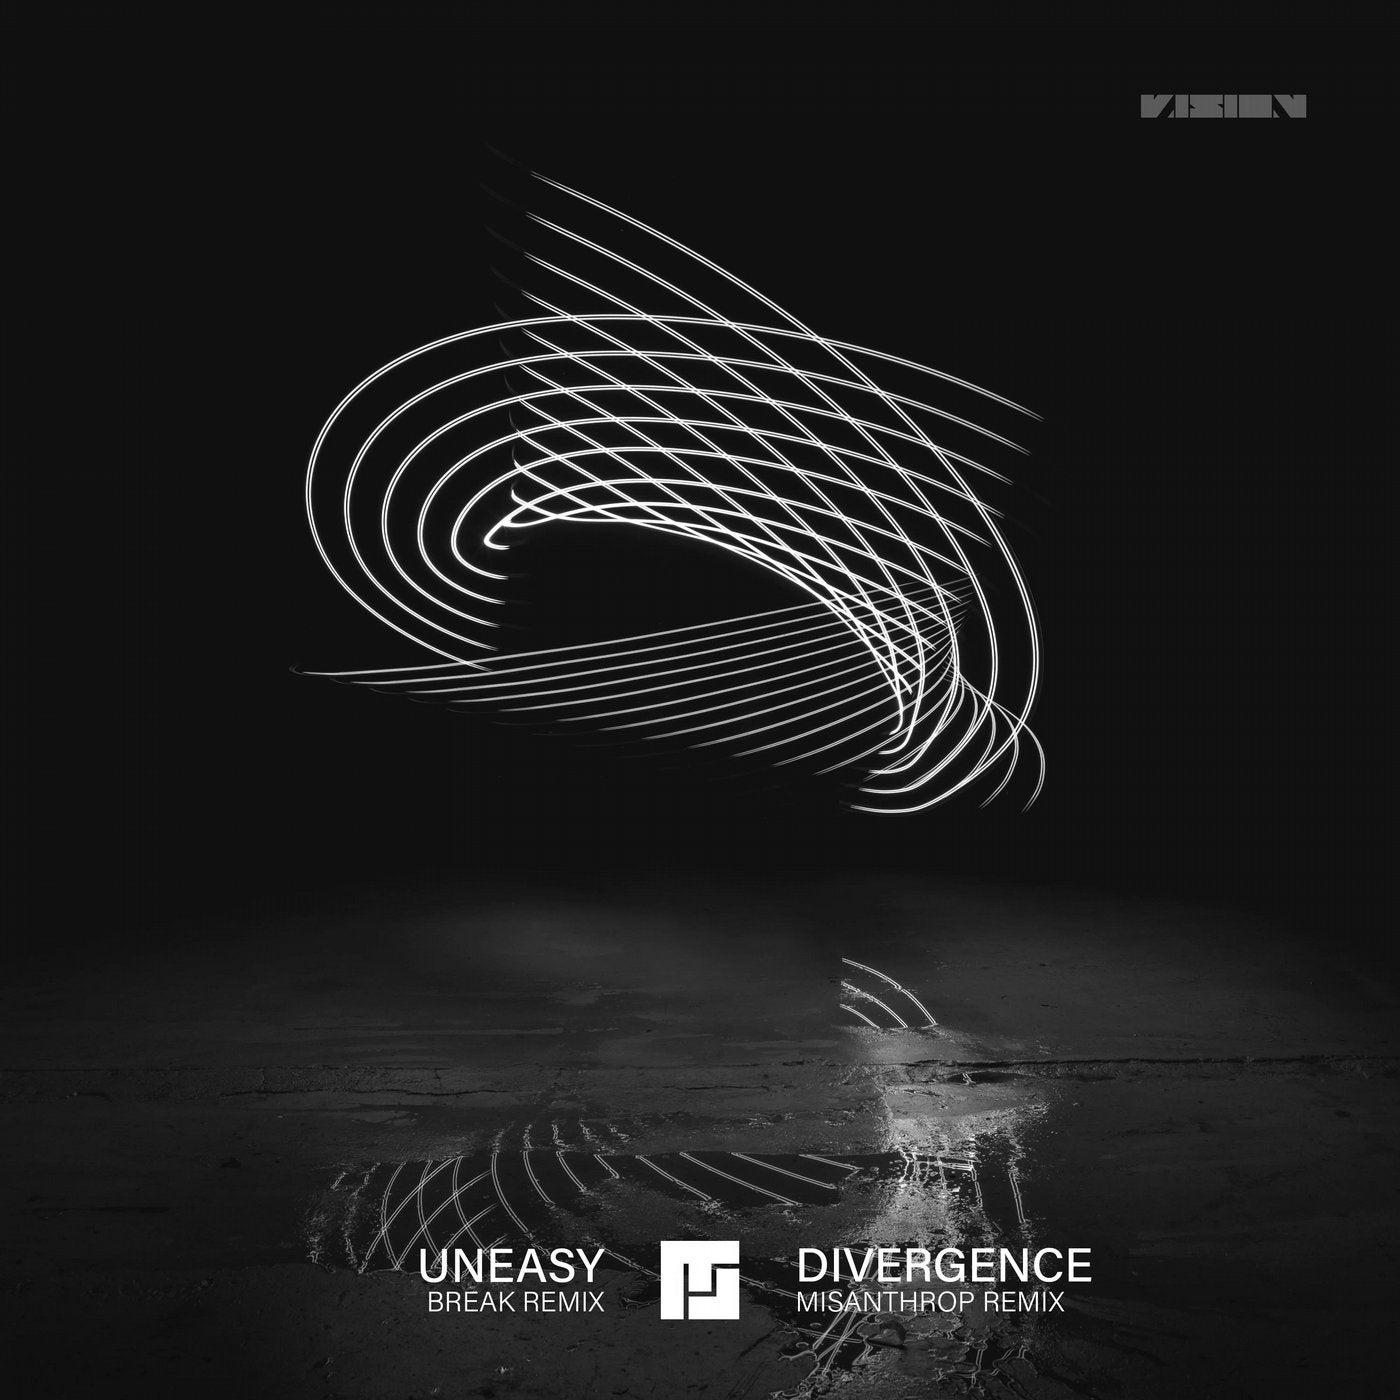 Uneasy (Break Remix) / Divergence (Misanthrop Remix)